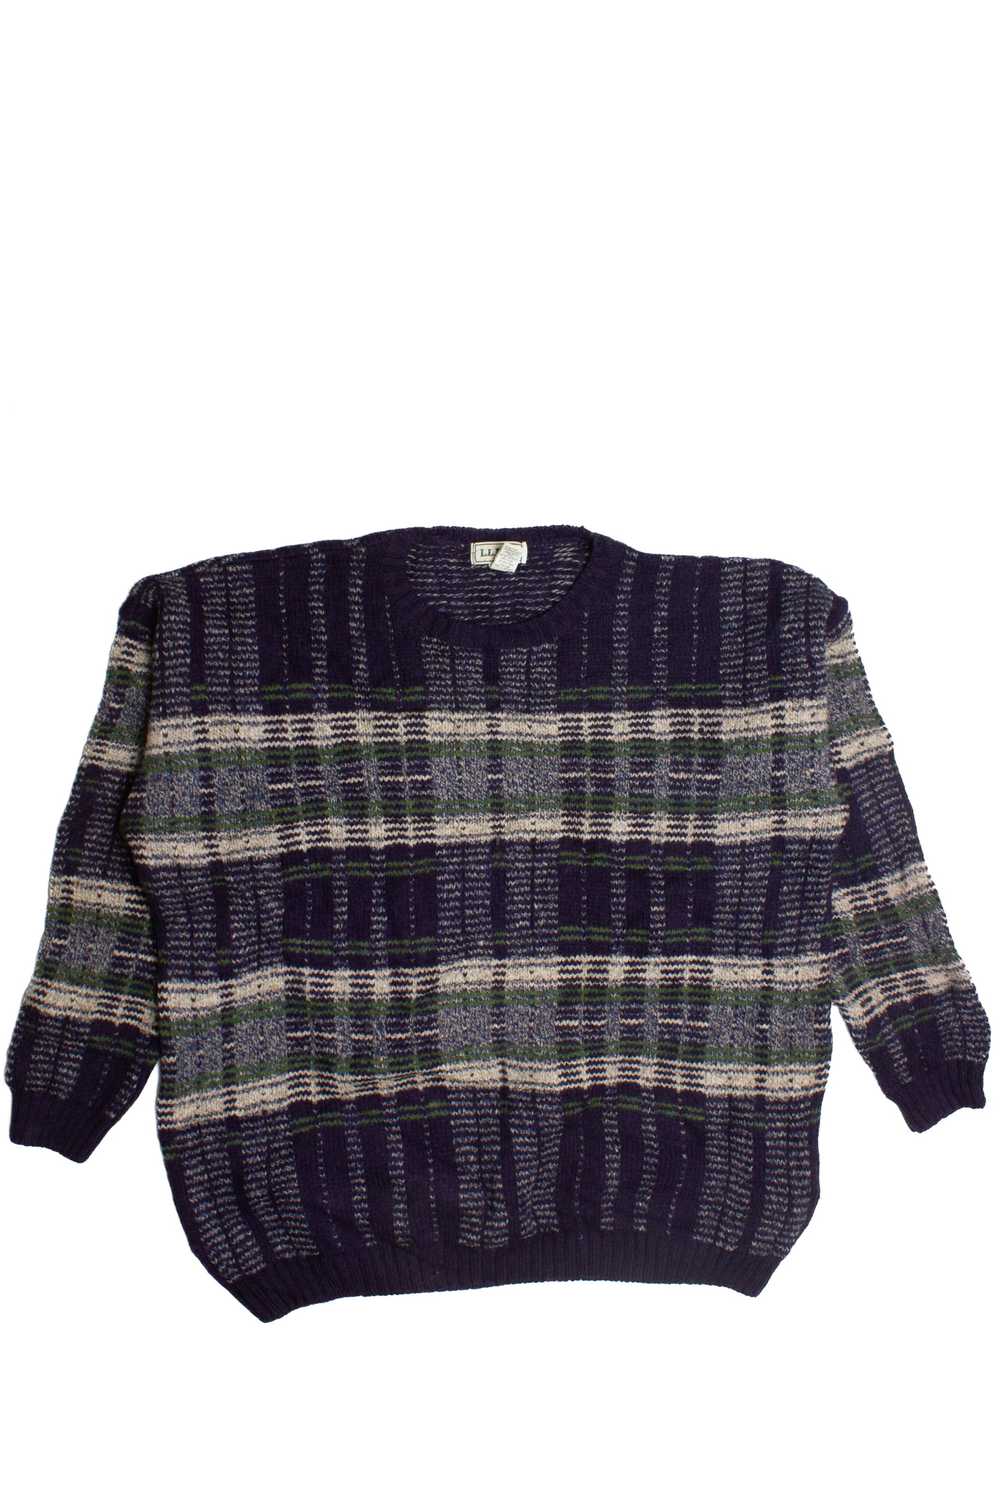 Vintage L.L. Bean 80s Sweater (1990s) - image 1